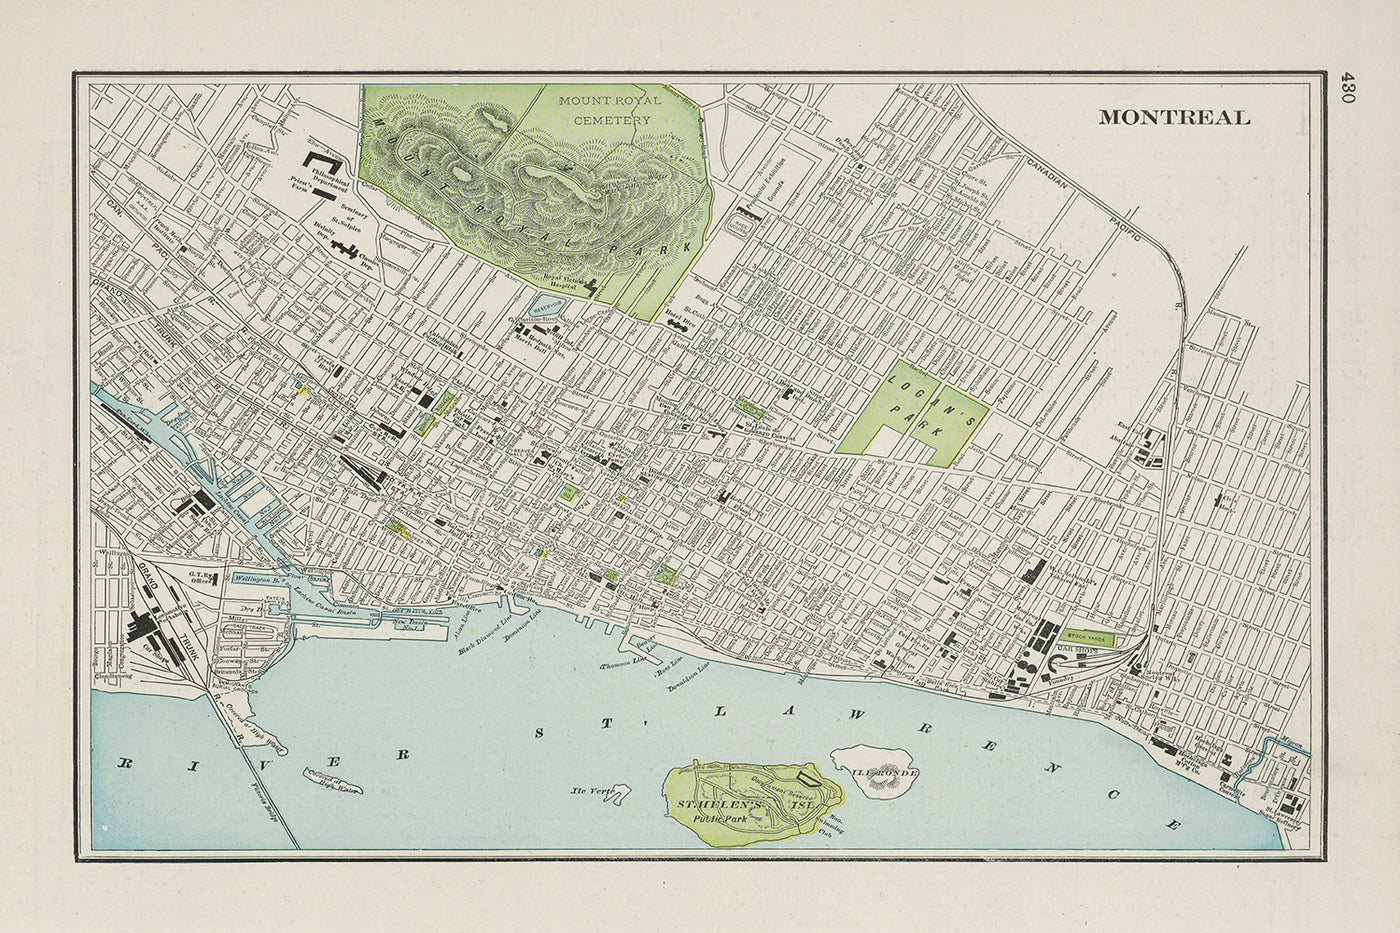 Ancienne carte de Montréal par Cram, 1901 : parc et cimetière du Mont-Royal, fleuve Saint-Laurent, Vieux-Montréal, Université McGill, parc Lafontaine